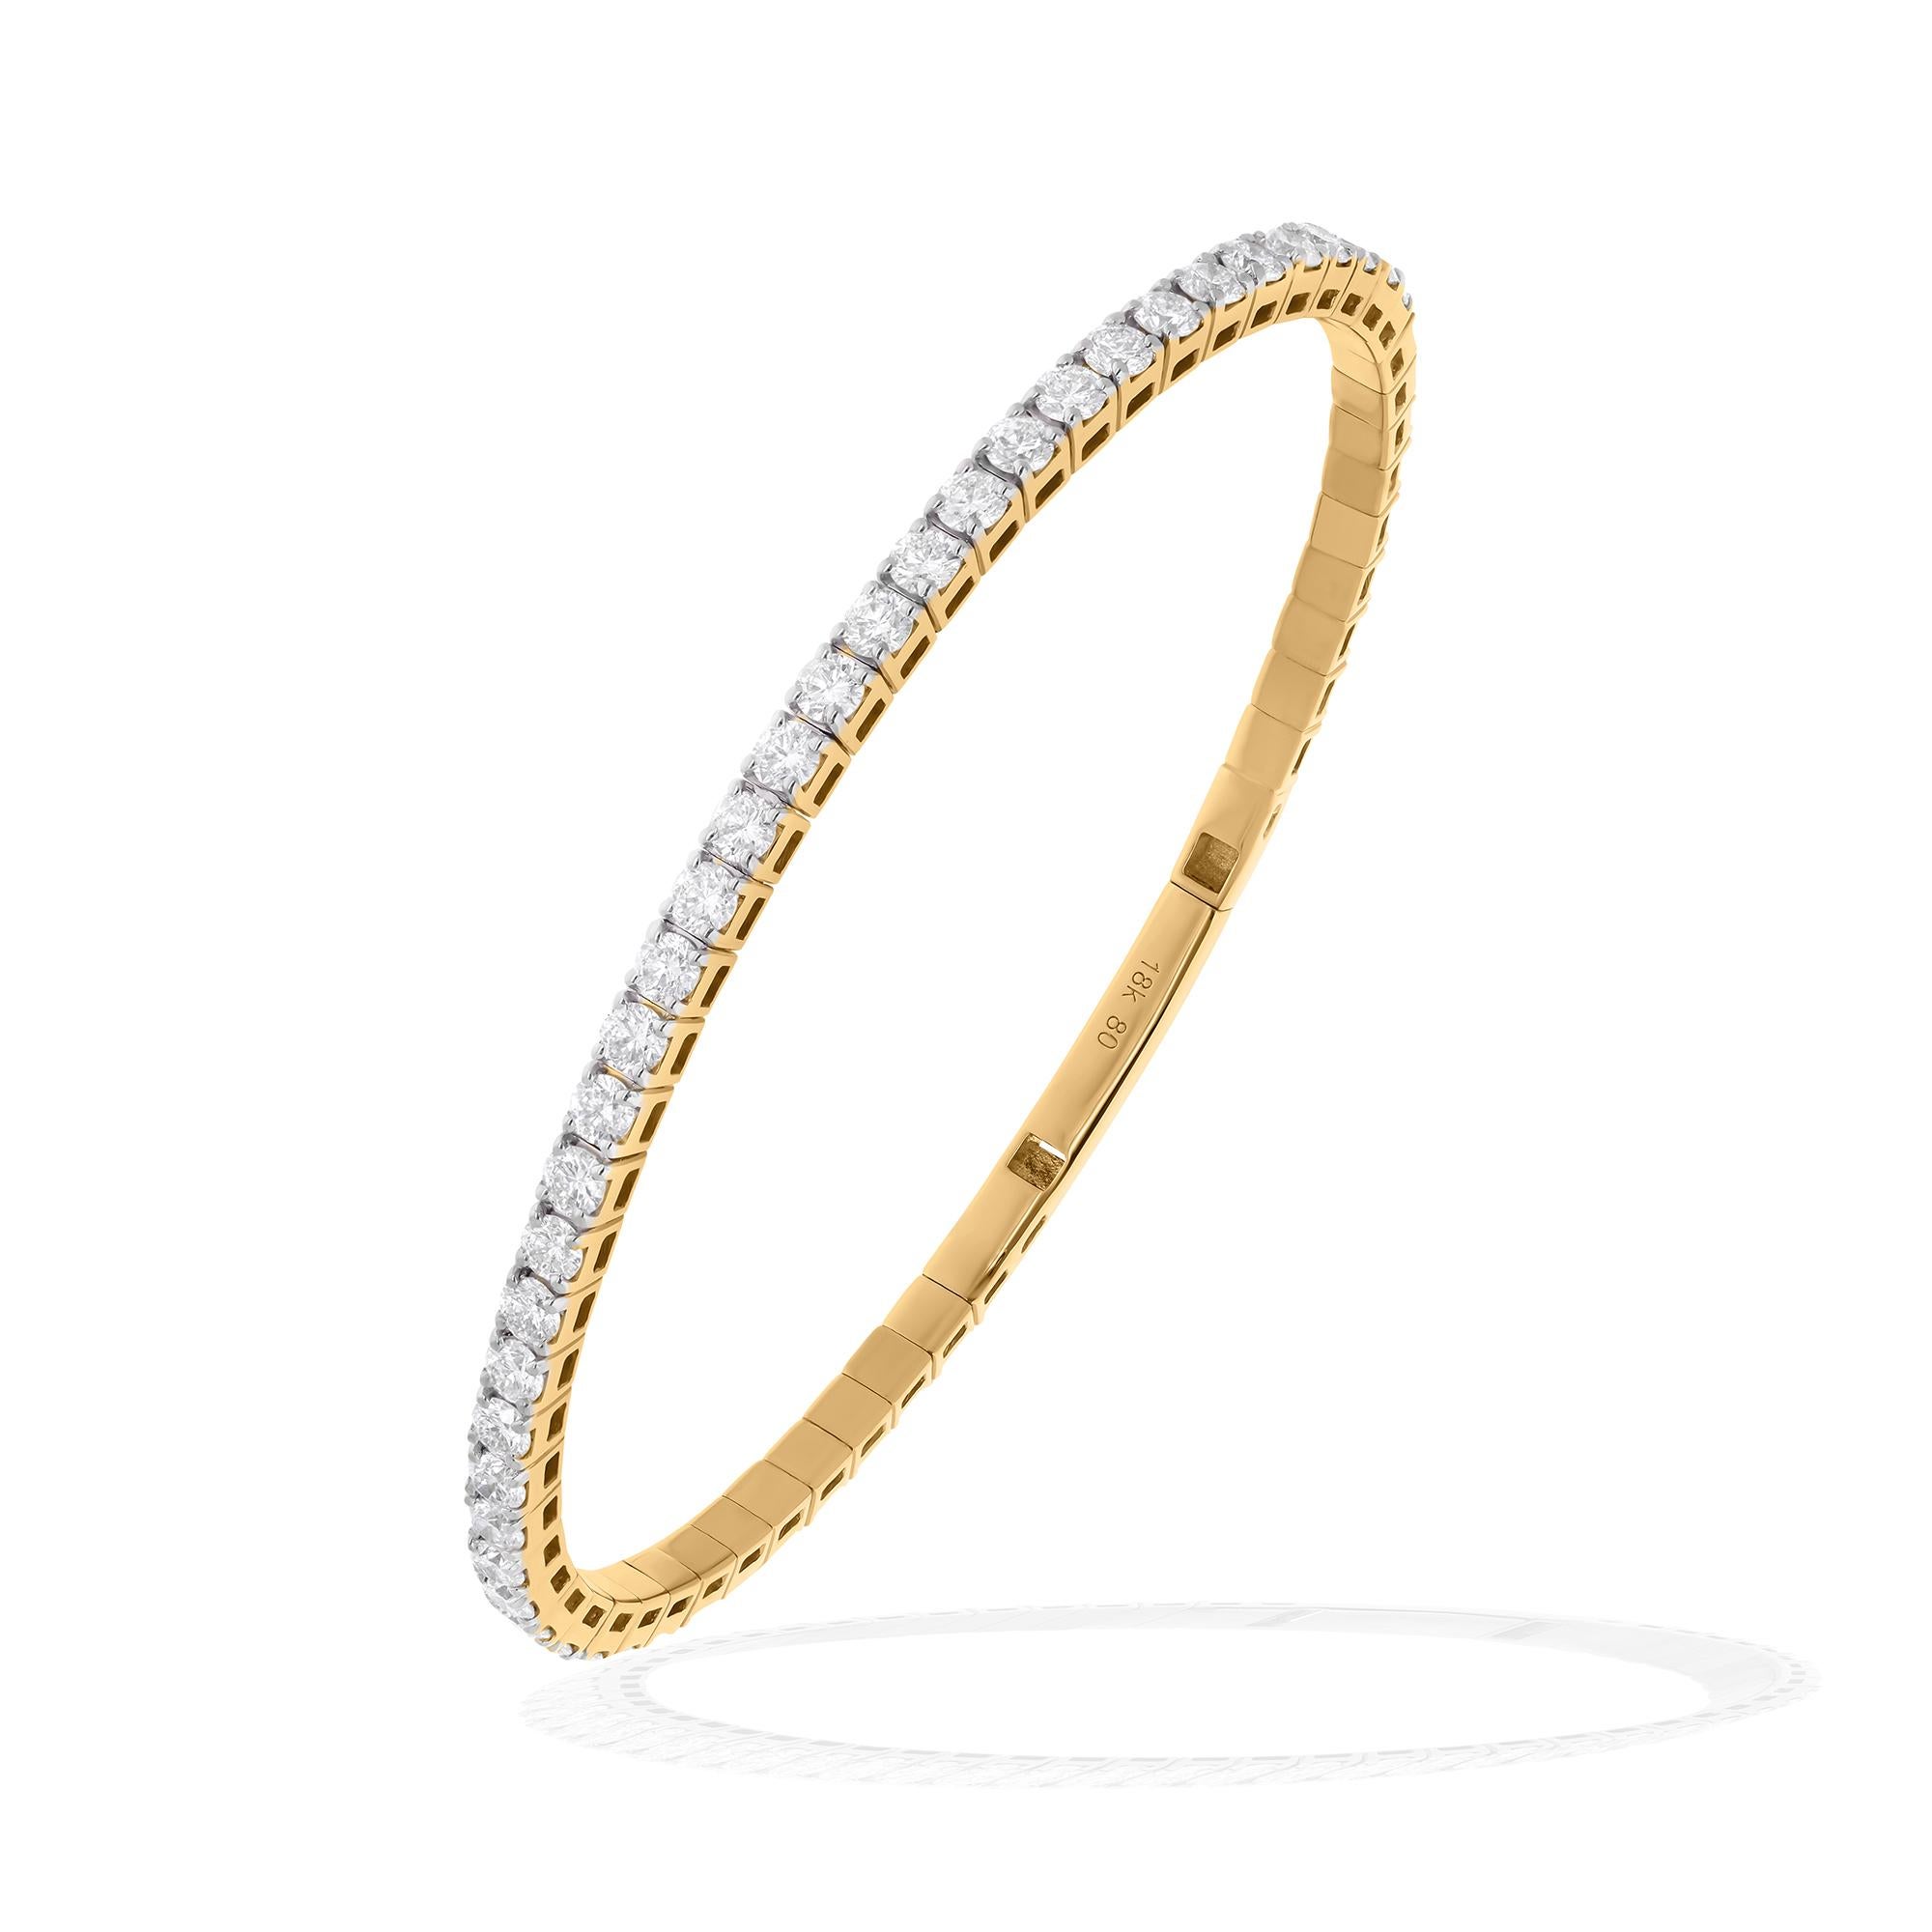 Chaque diamant de ce bracelet a été sélectionné à la main pour sa brillance et sa clarté exceptionnelles, ce qui garantit une luminosité éblouissante à chaque mouvement. Le grade de couleur HI signifie que les diamants sont presque incolores et